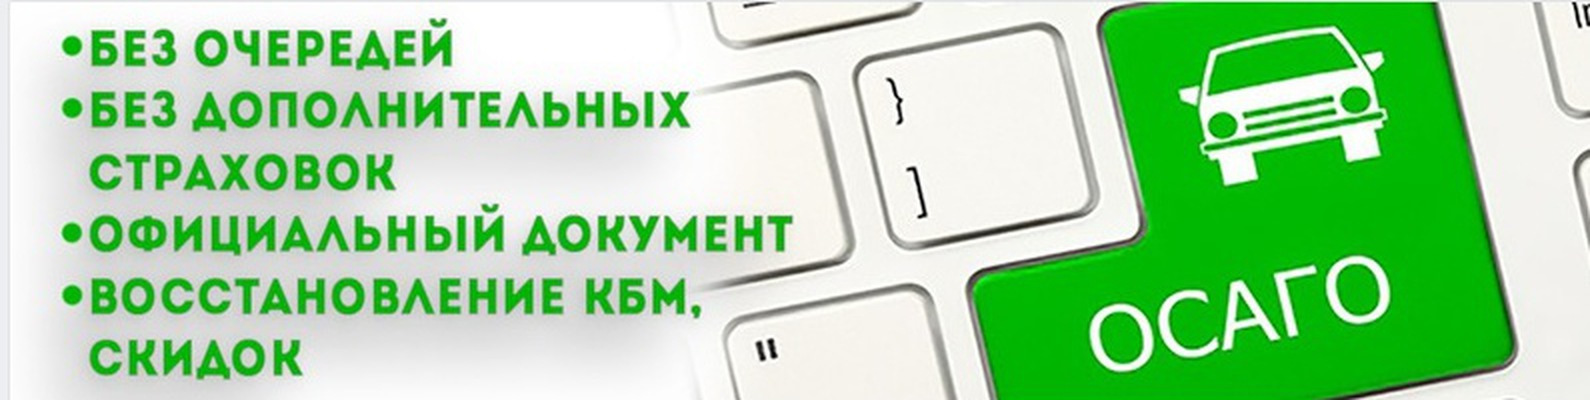 Купить Осаго Онлайн В Красноярске